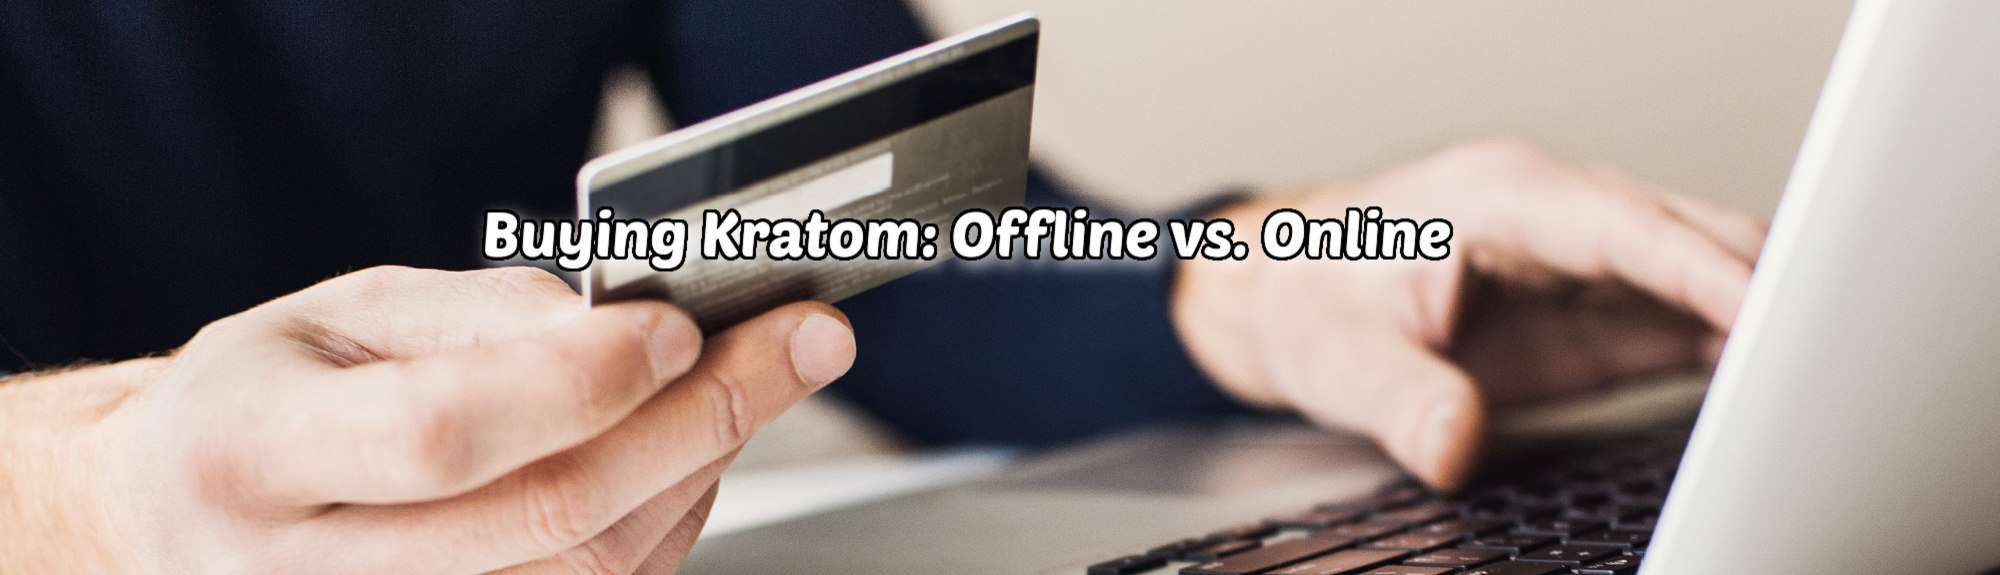 image of buying kratom offline vs online